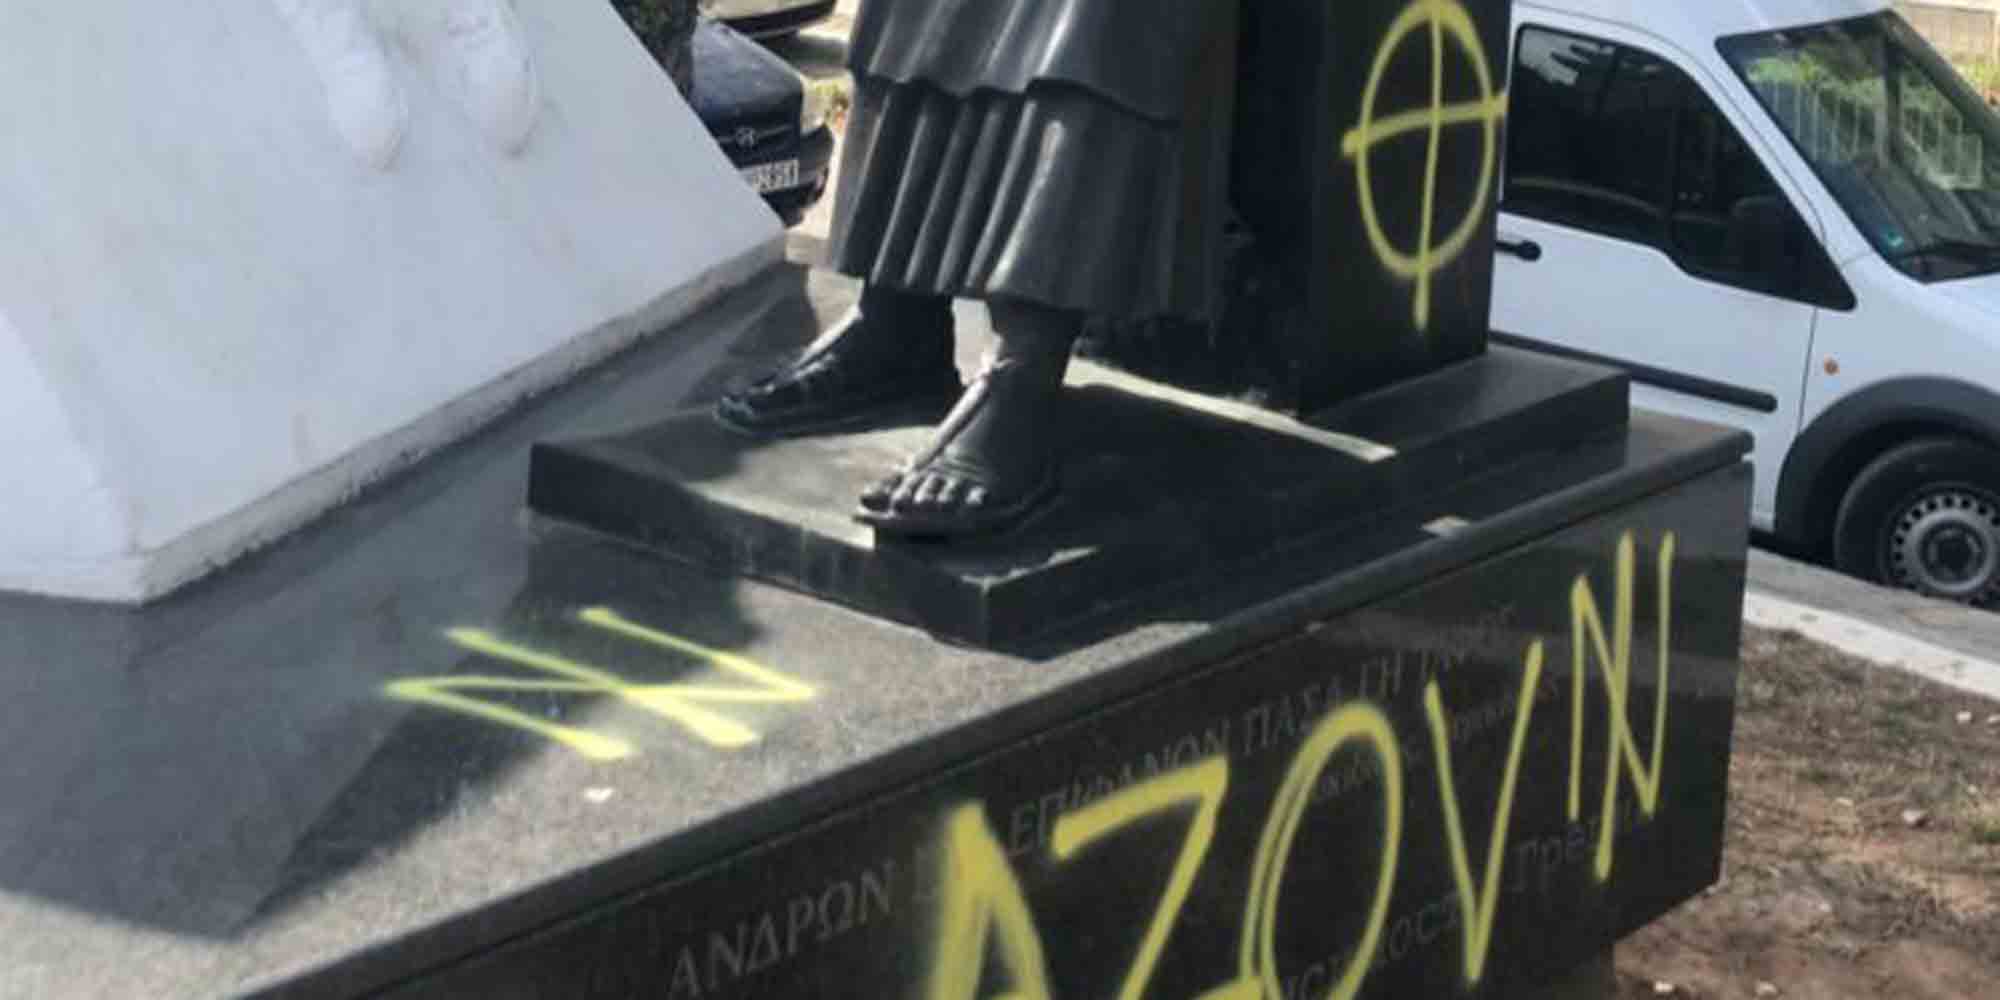 Η λέξη Azov στο μνημείο προκάλεσε την αντίδραση της Πρεσβείας της Ρωσίας στην Ελλάδα